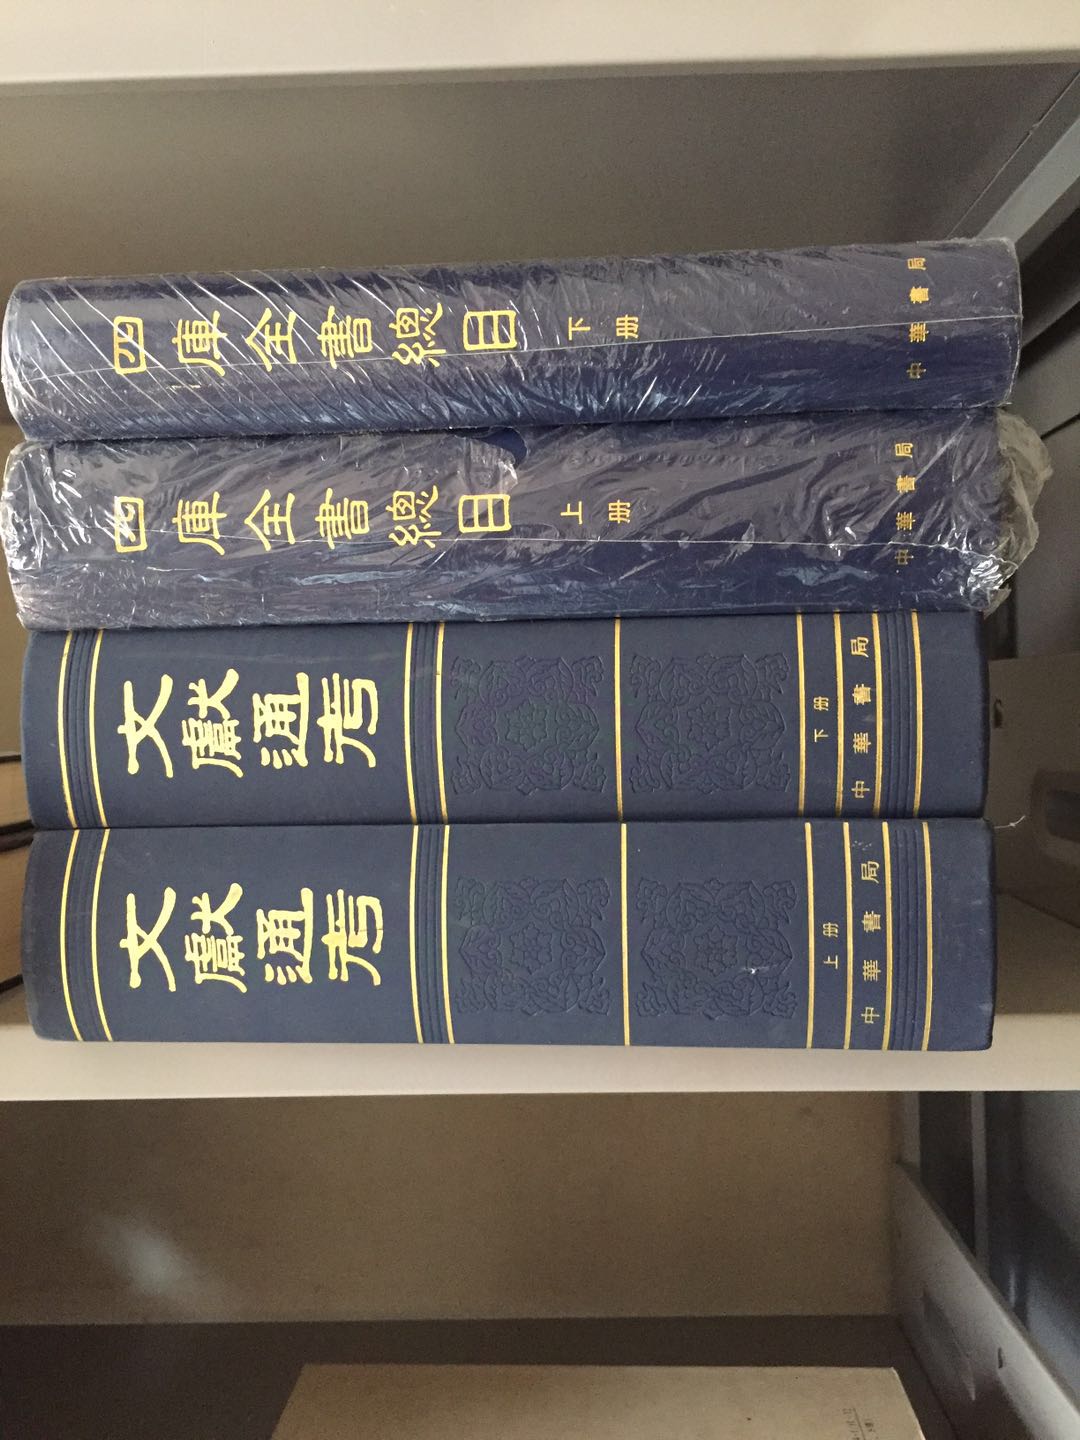 北京 顺义区搬家处理书籍 回收 新书APP